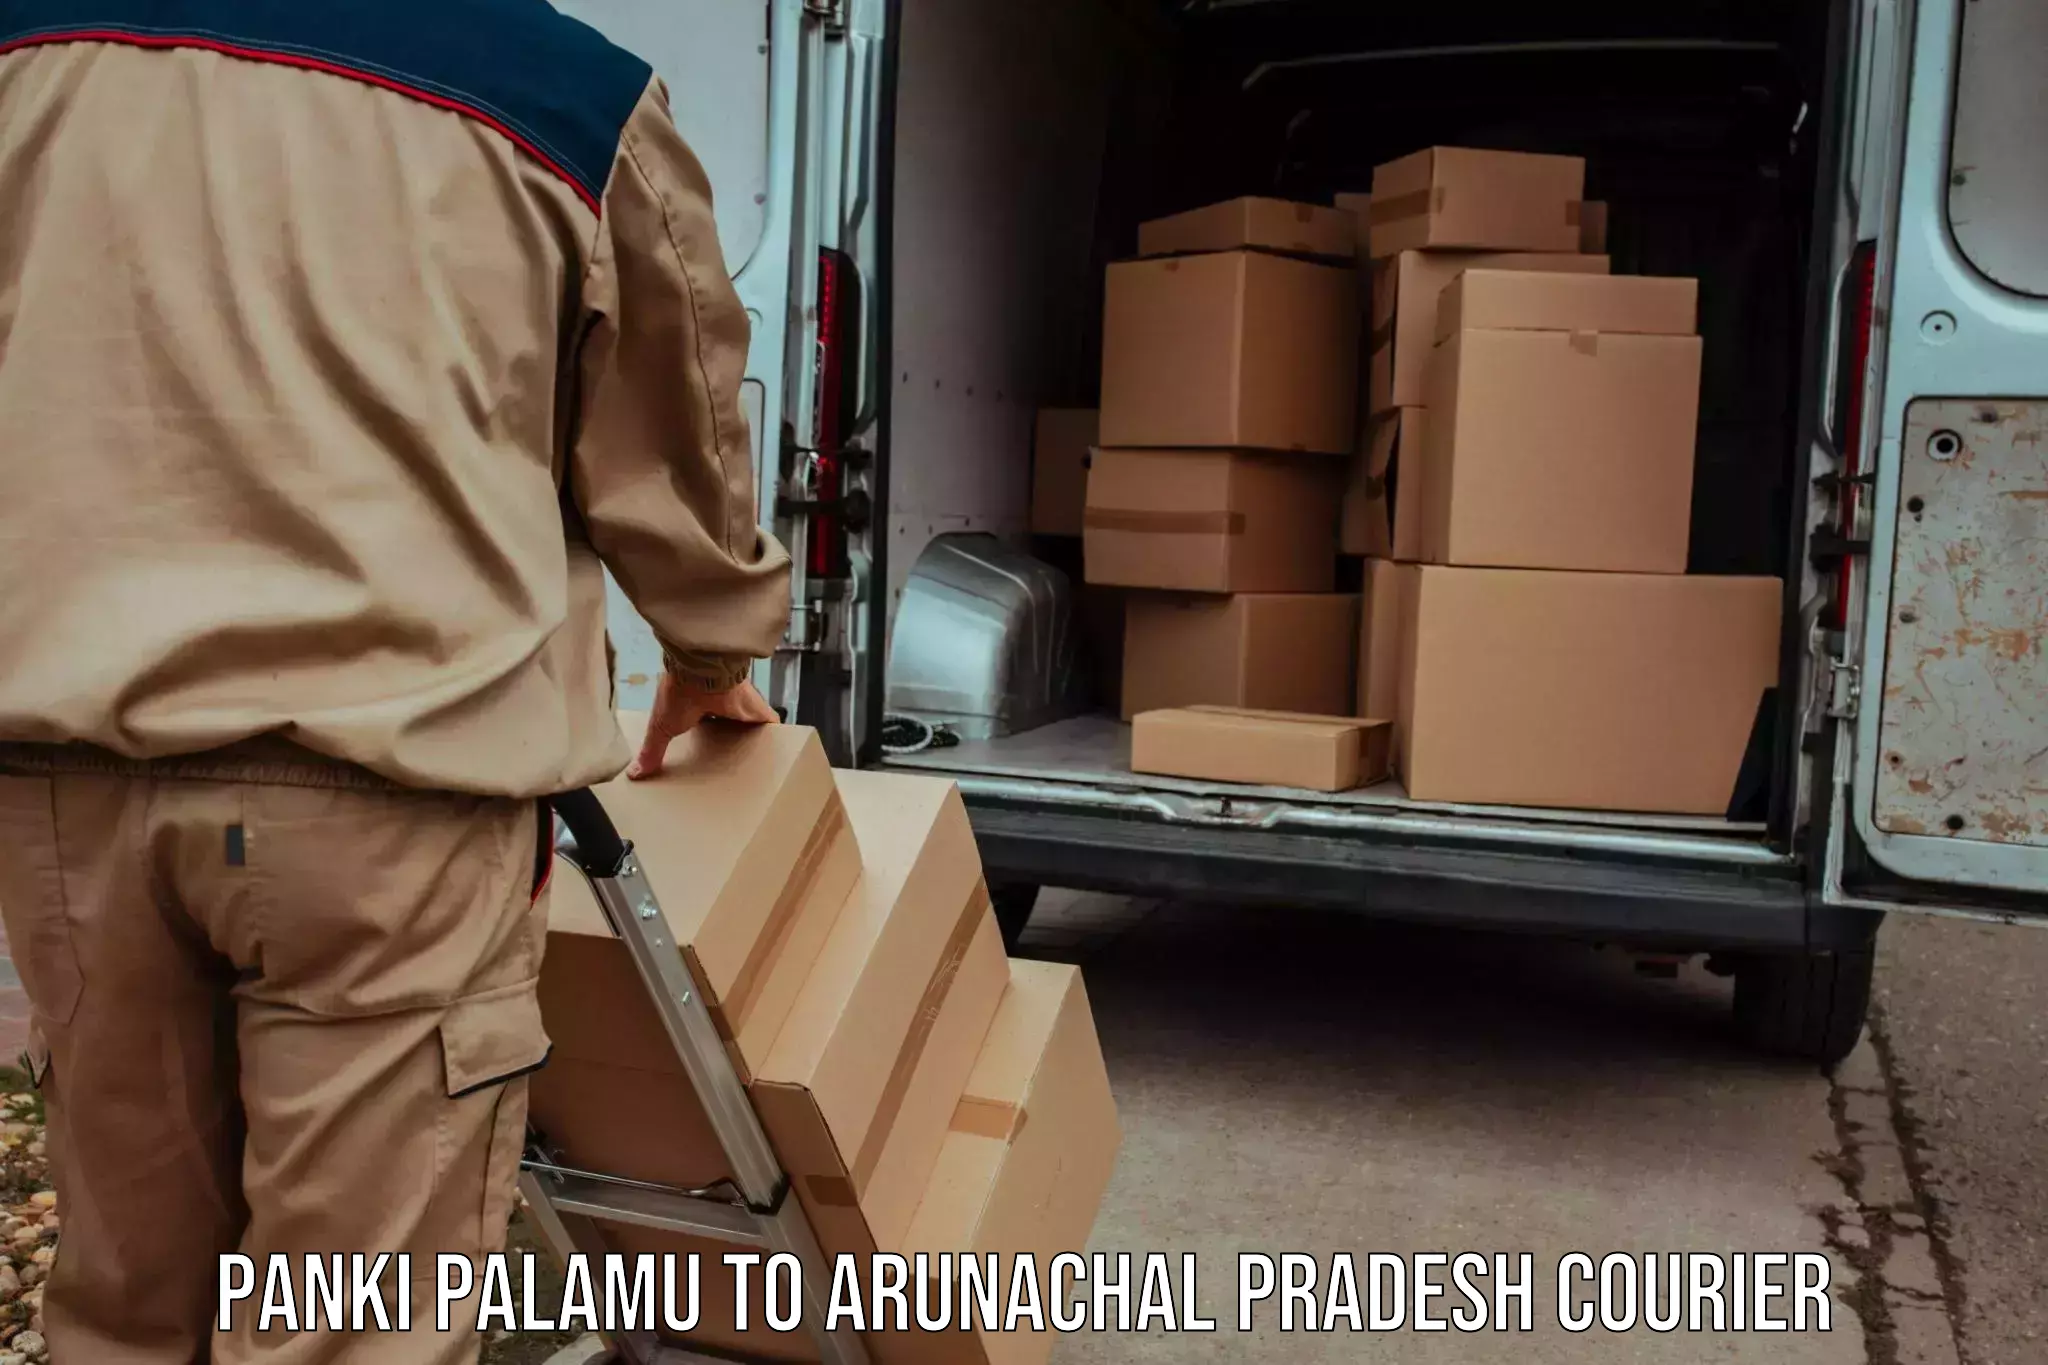 Multi-service courier options Panki Palamu to Diyun